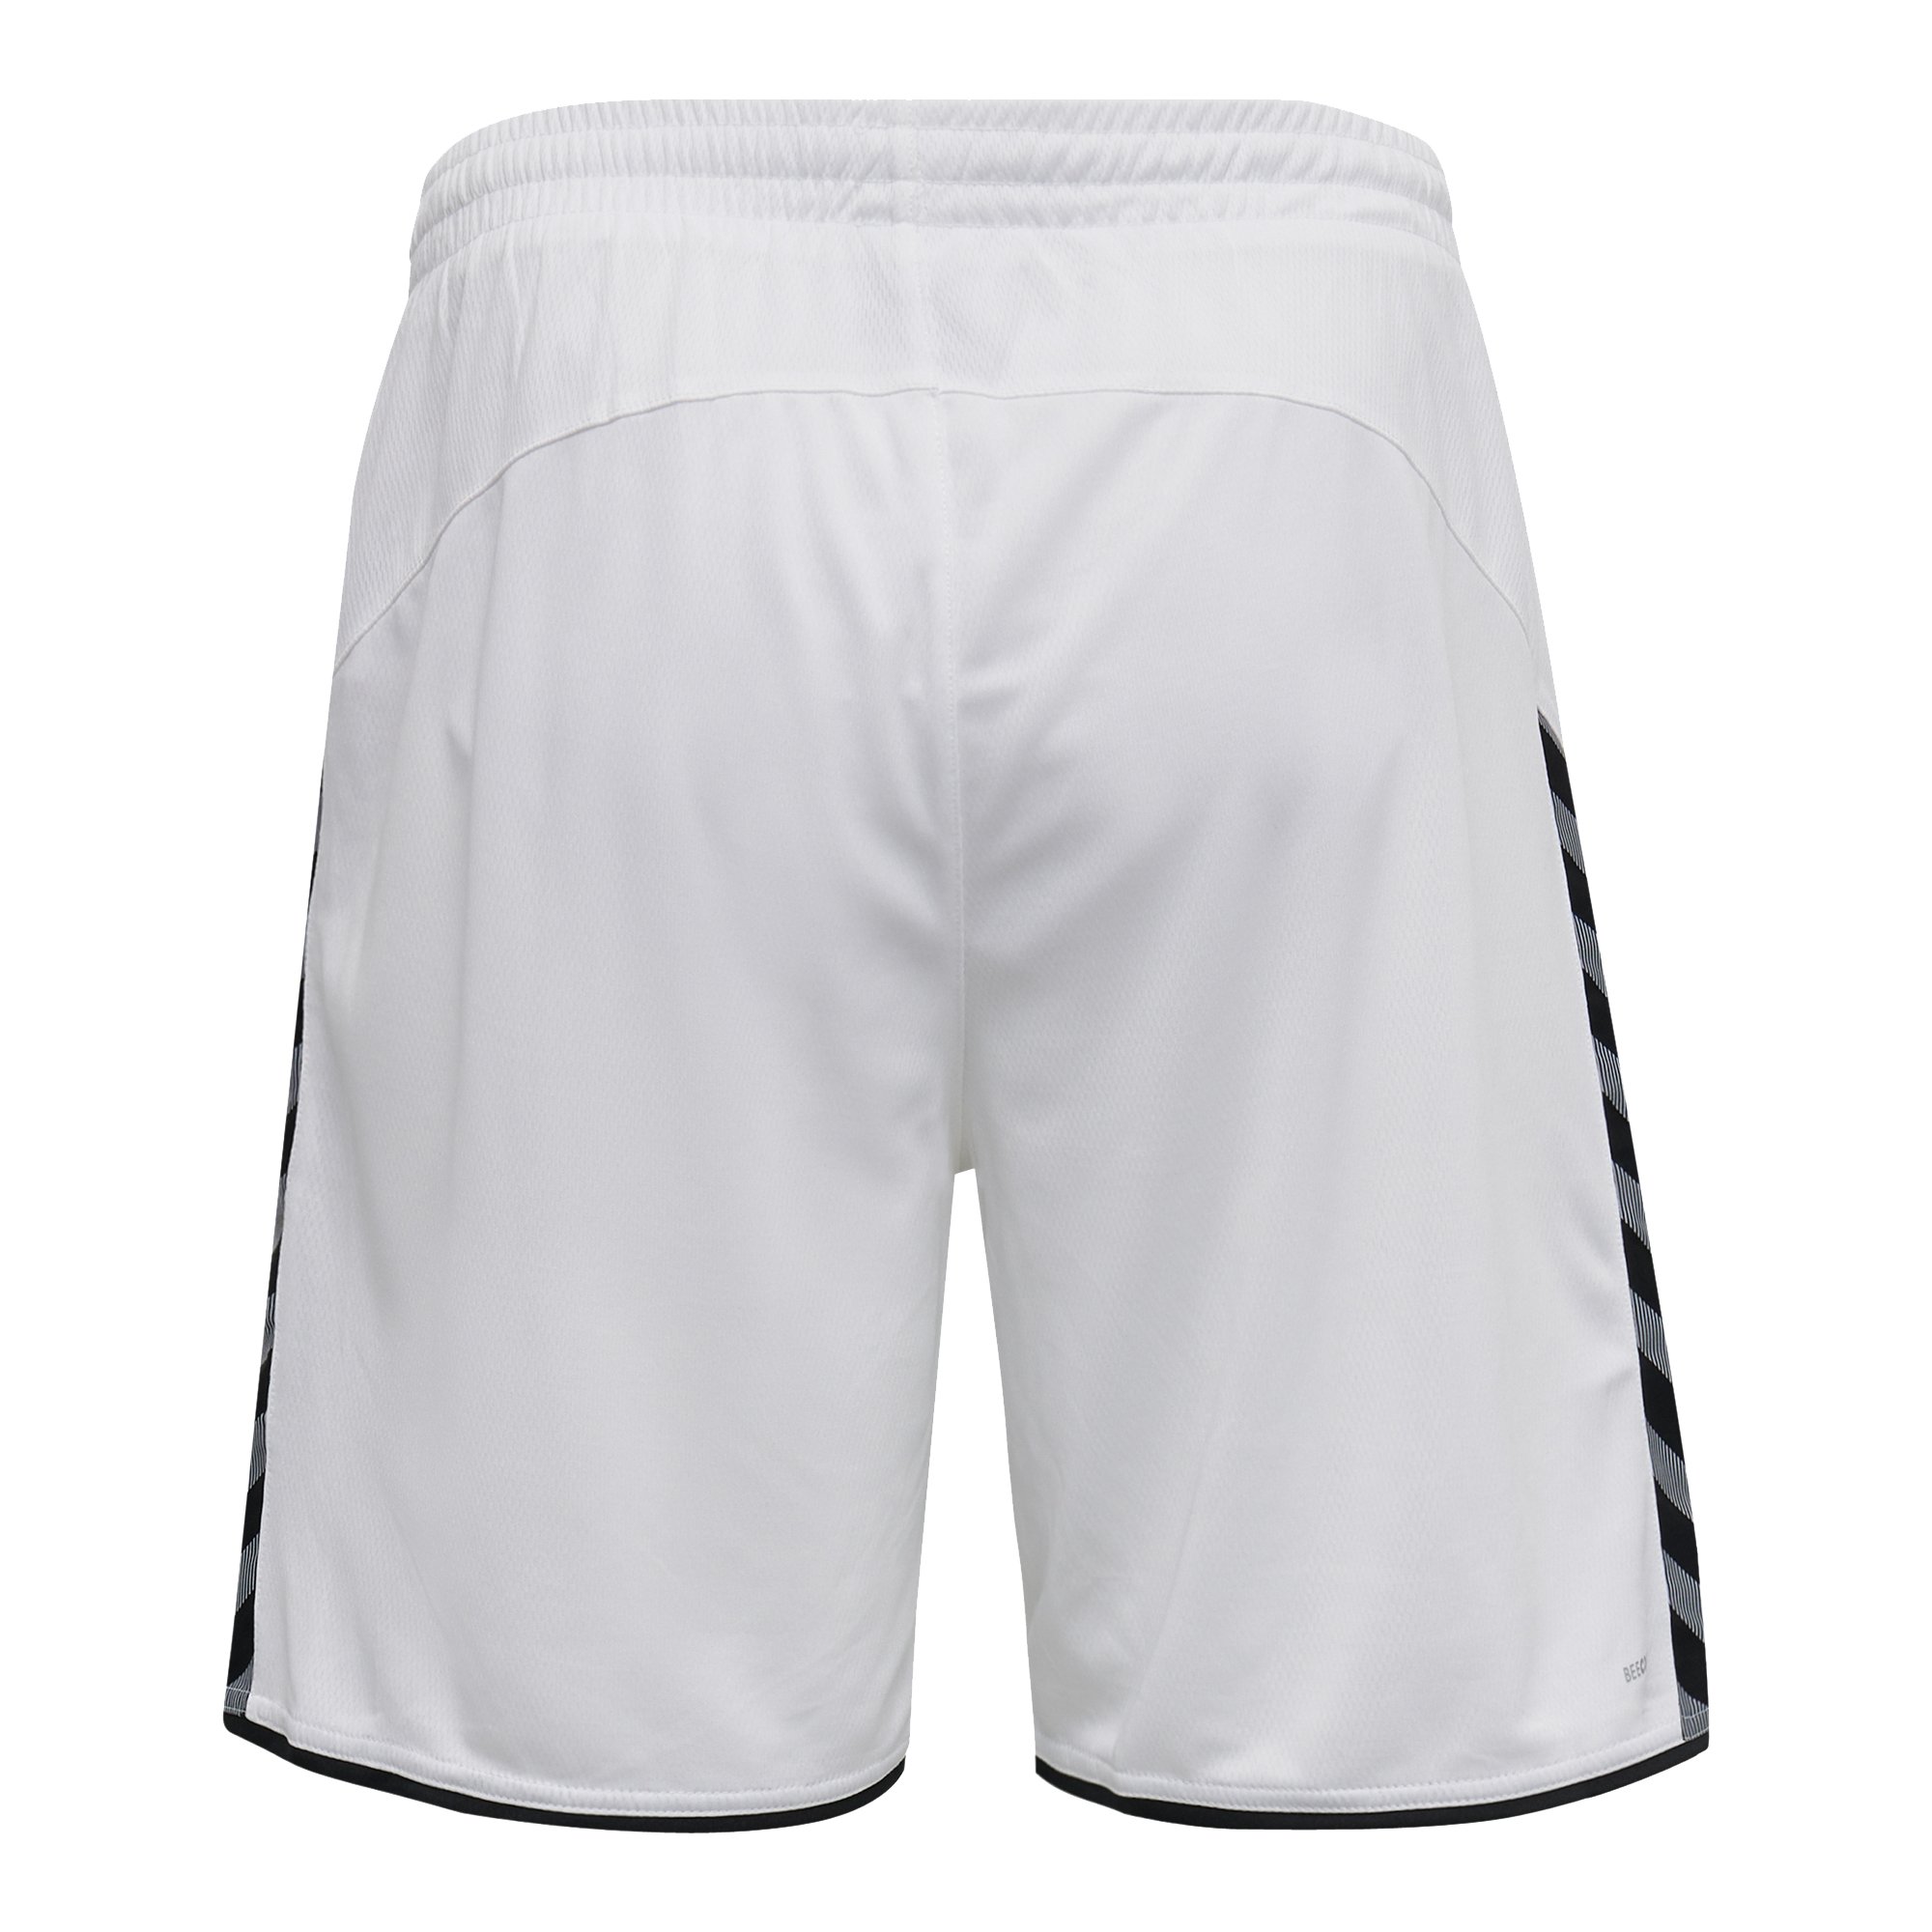 L.E. Volleys Shorts